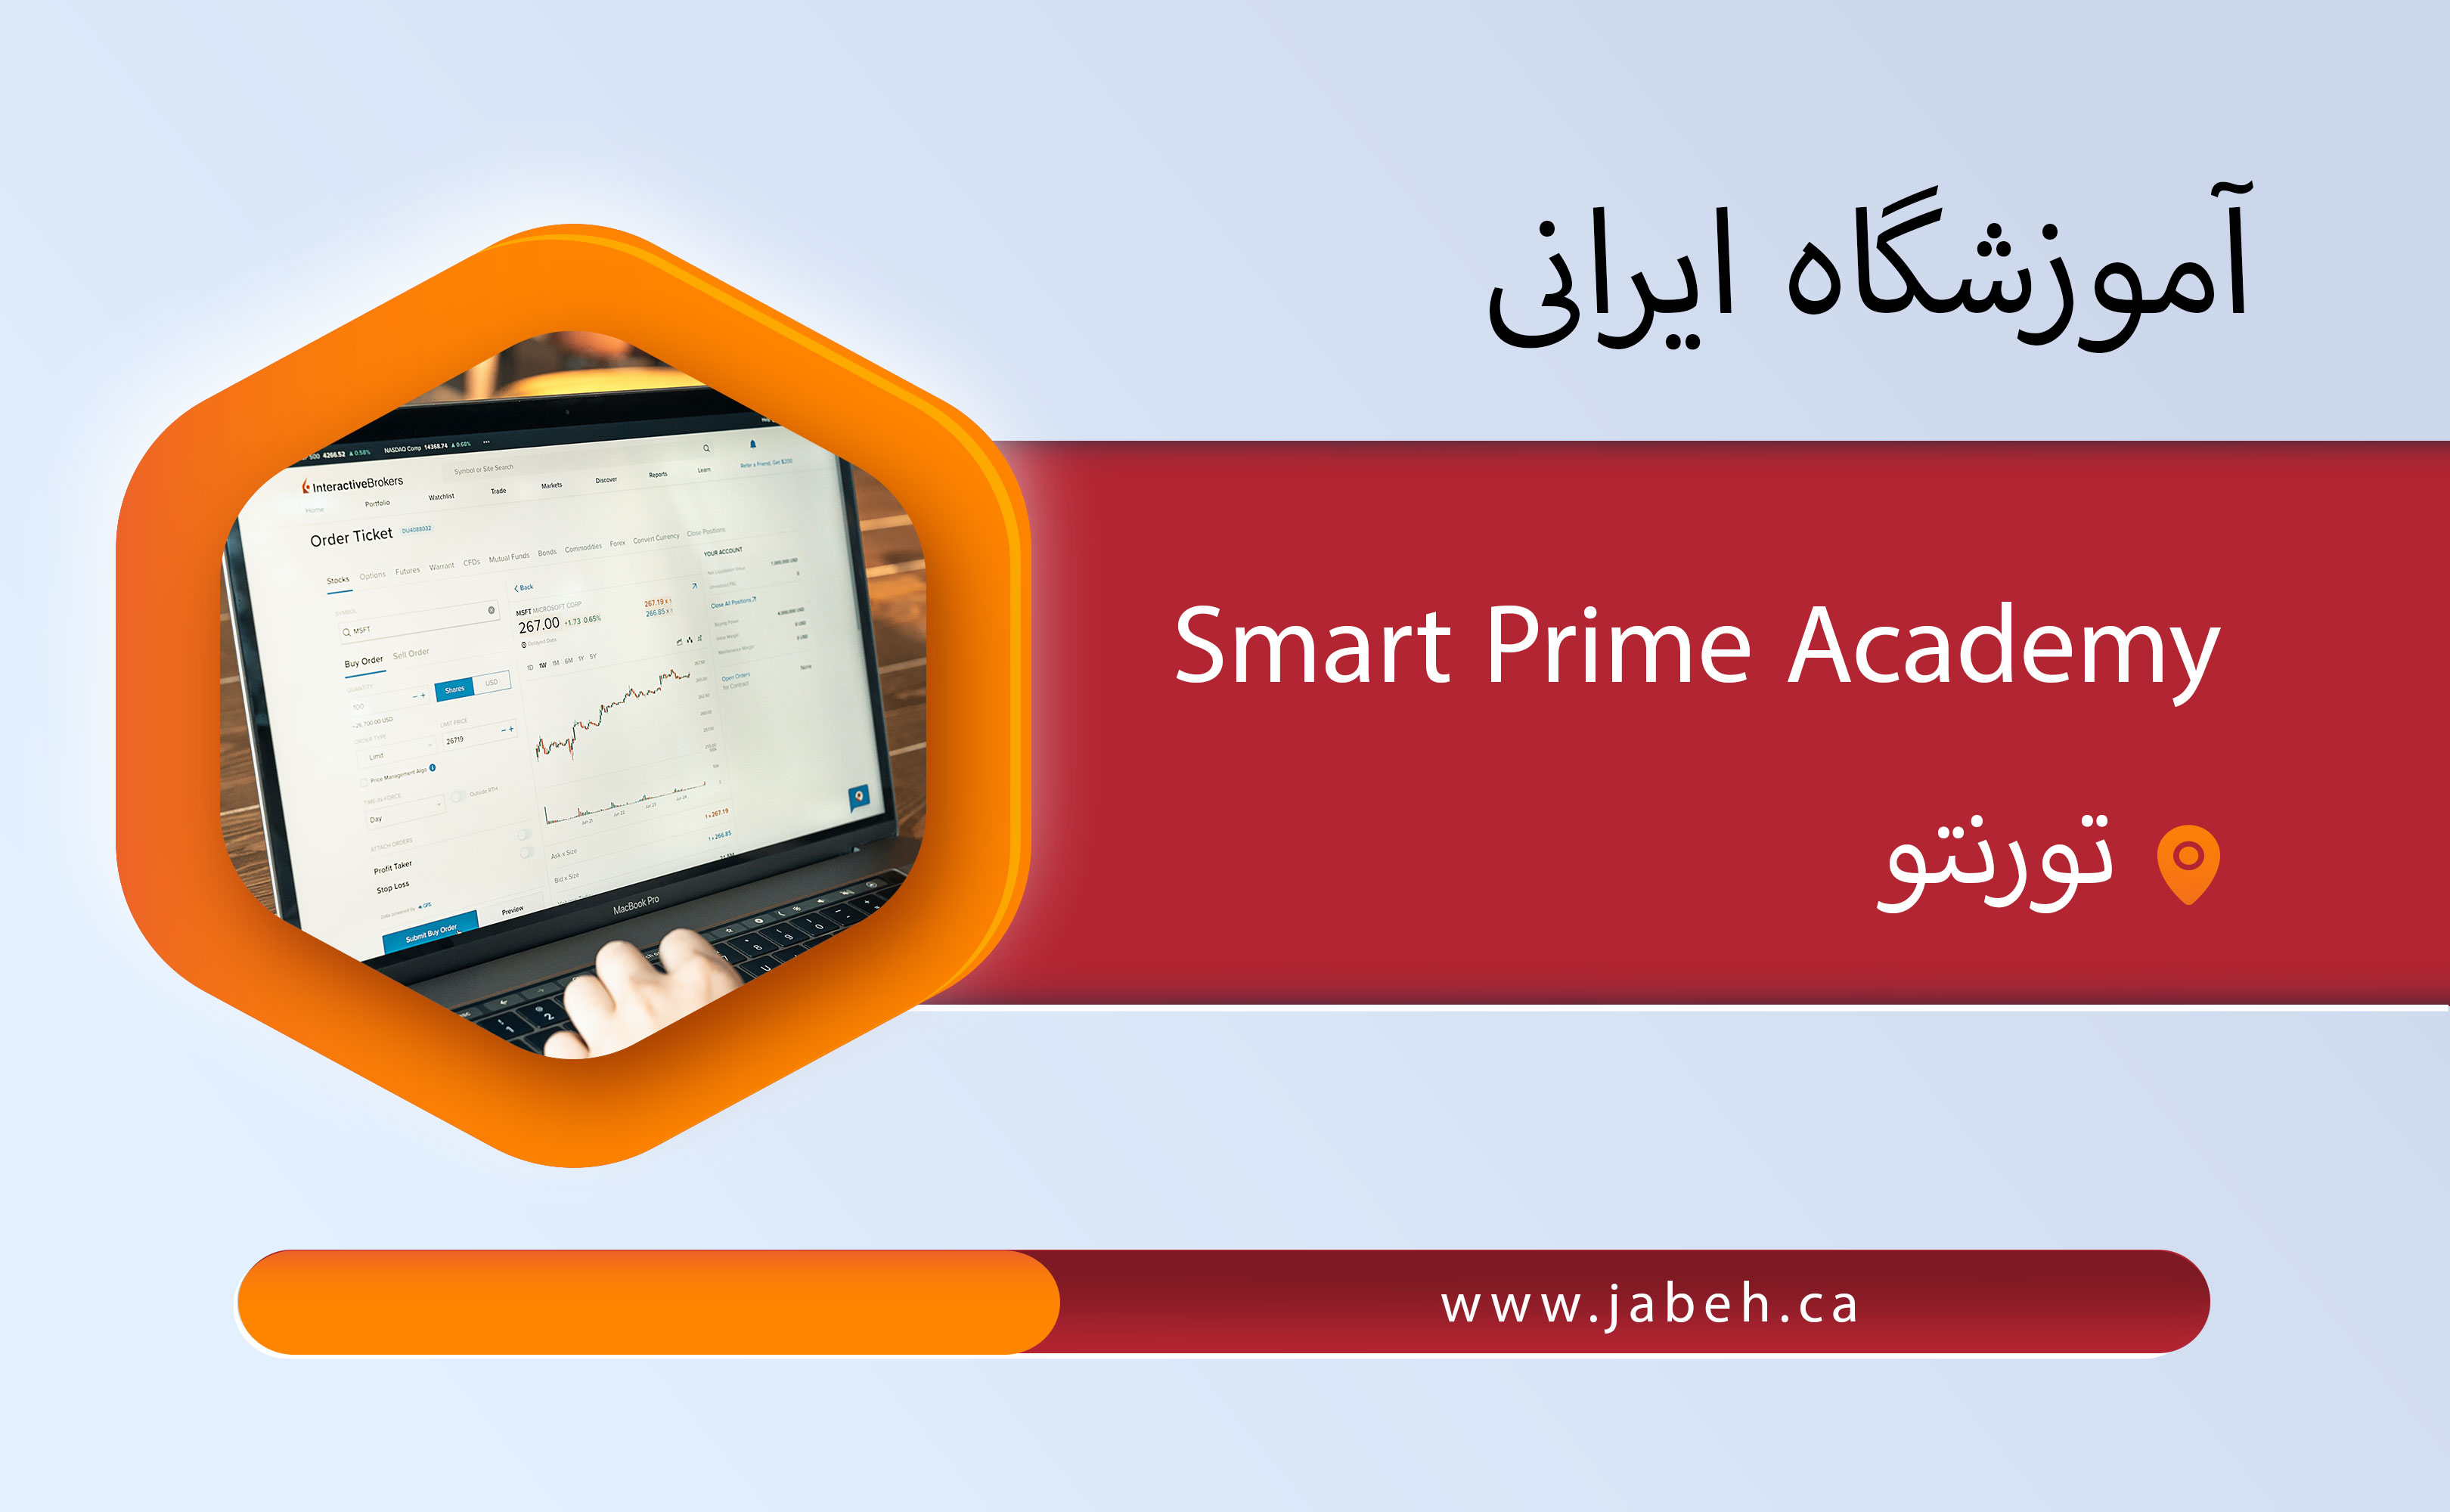 آموزشگاه Smart Prime Academy در تورنتو